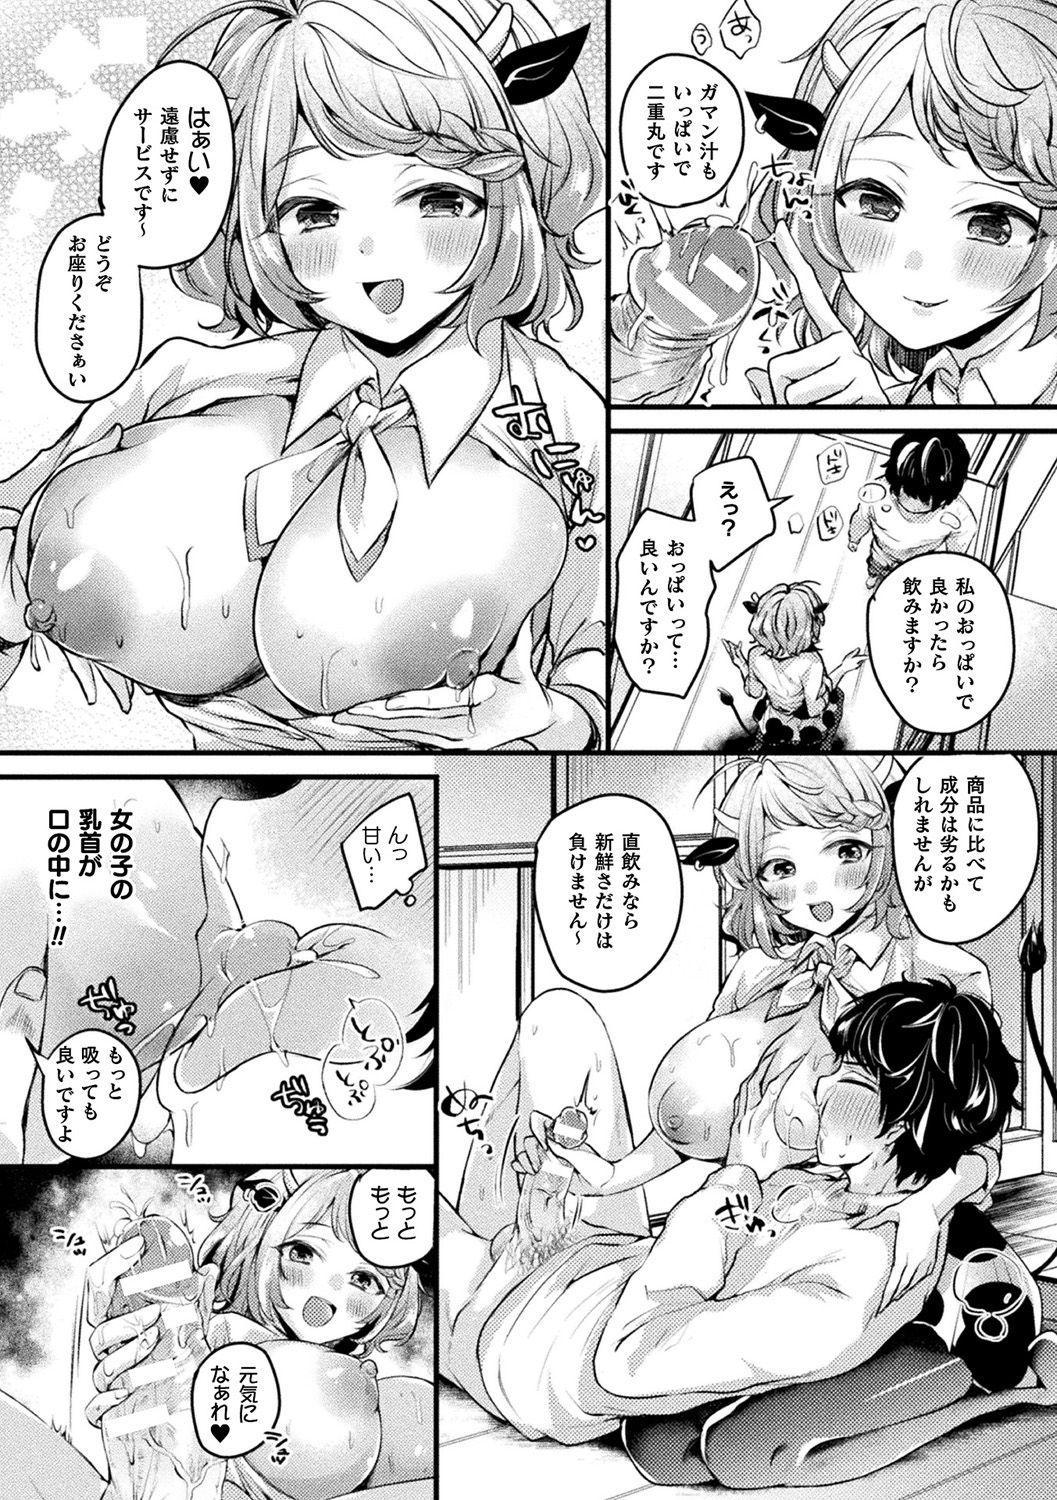 Teensnow Bessatsu Comic Unreal Jingai Onee-san ni Yoru Amayakashi Sakusei Hen Vol. 1 Gays - Page 9